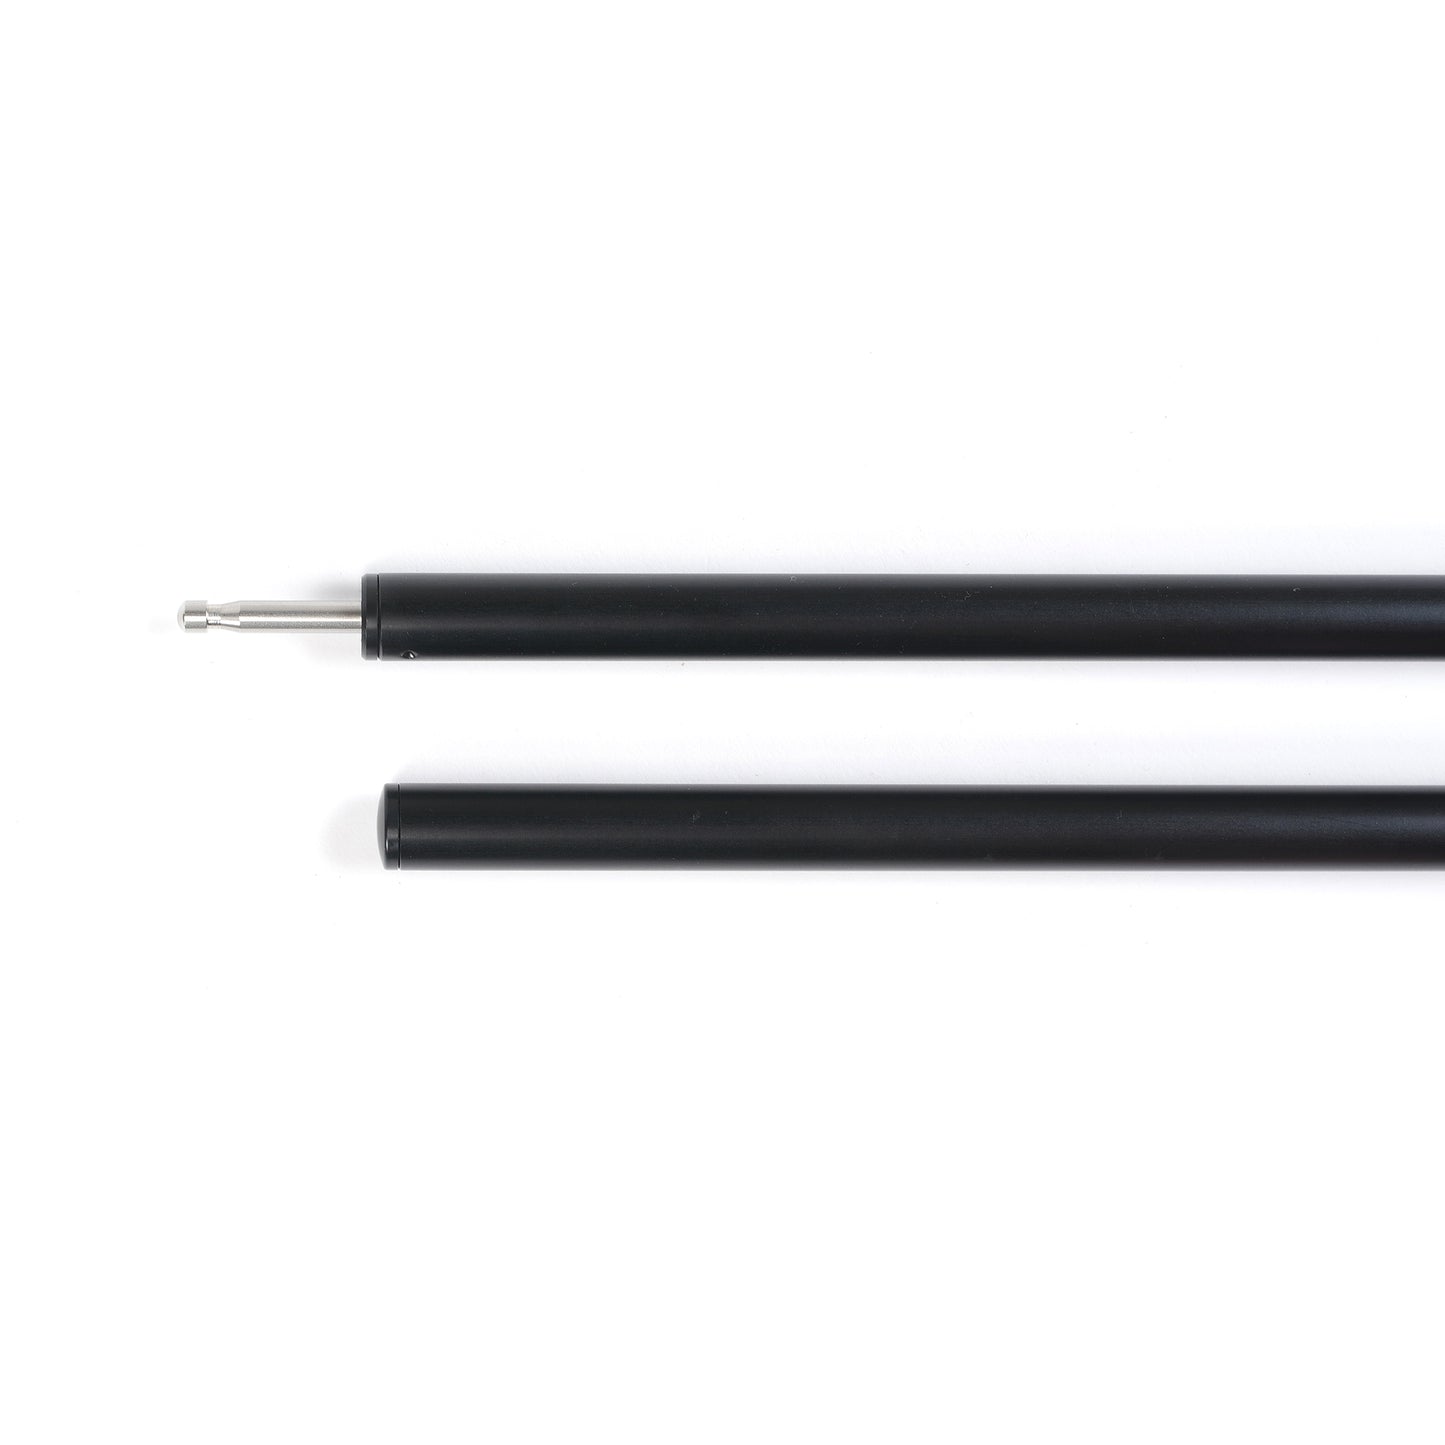 Tarp Pole 1800FX (2 line) - Black